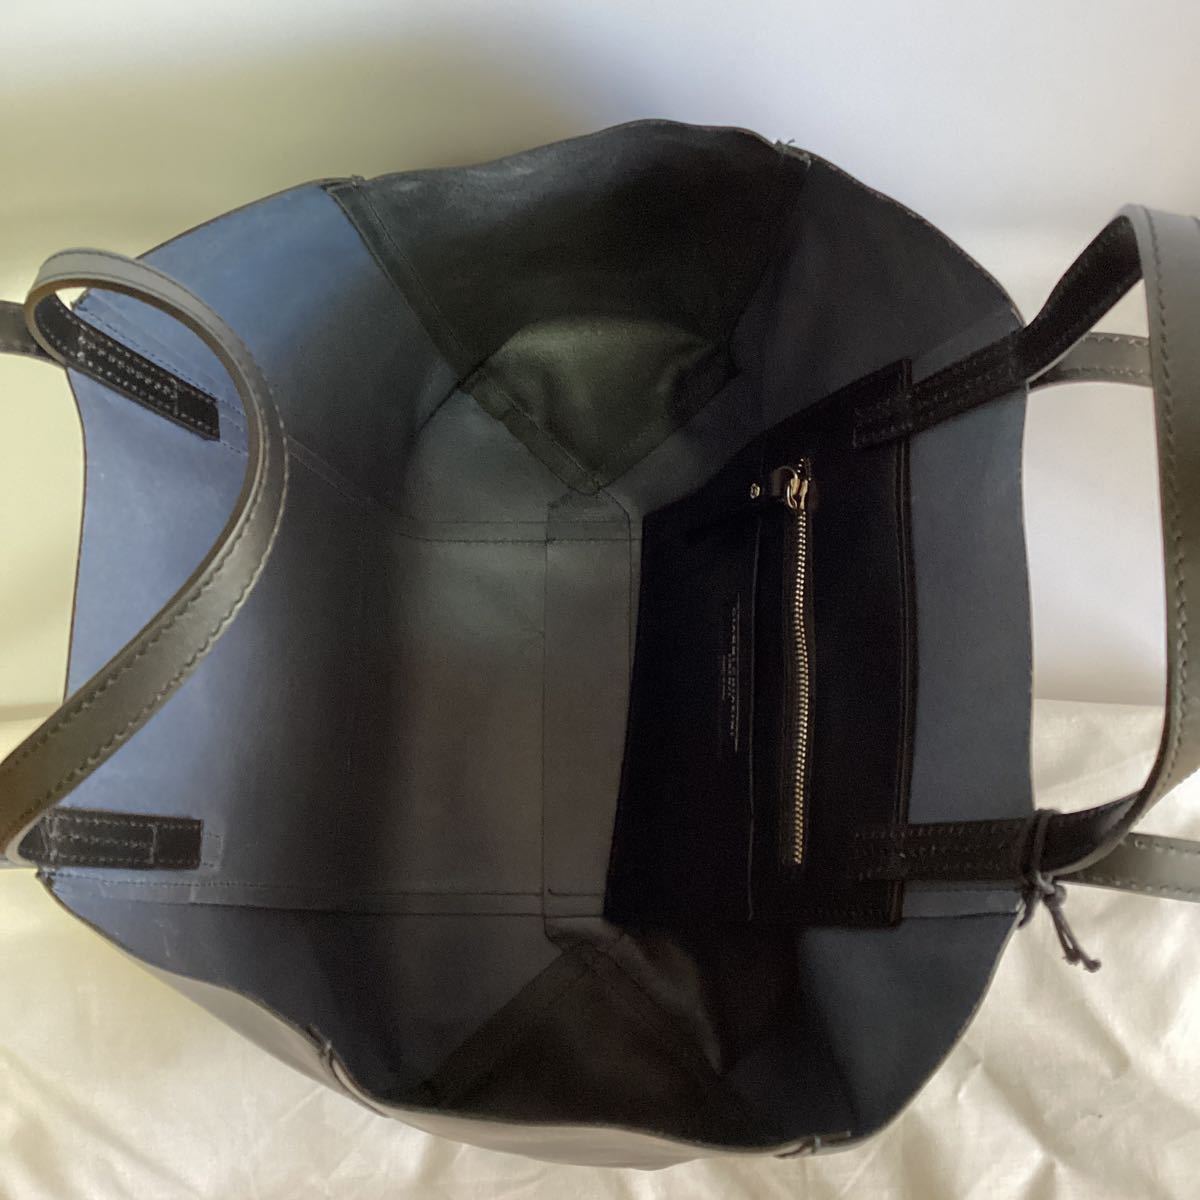 [ с биркой не использовался ] обычная цена 45100 иен Gianni Carry niGIANNI CHIARINI Hsu перлит большая сумка плечо bai цвет темно-синий × черный 